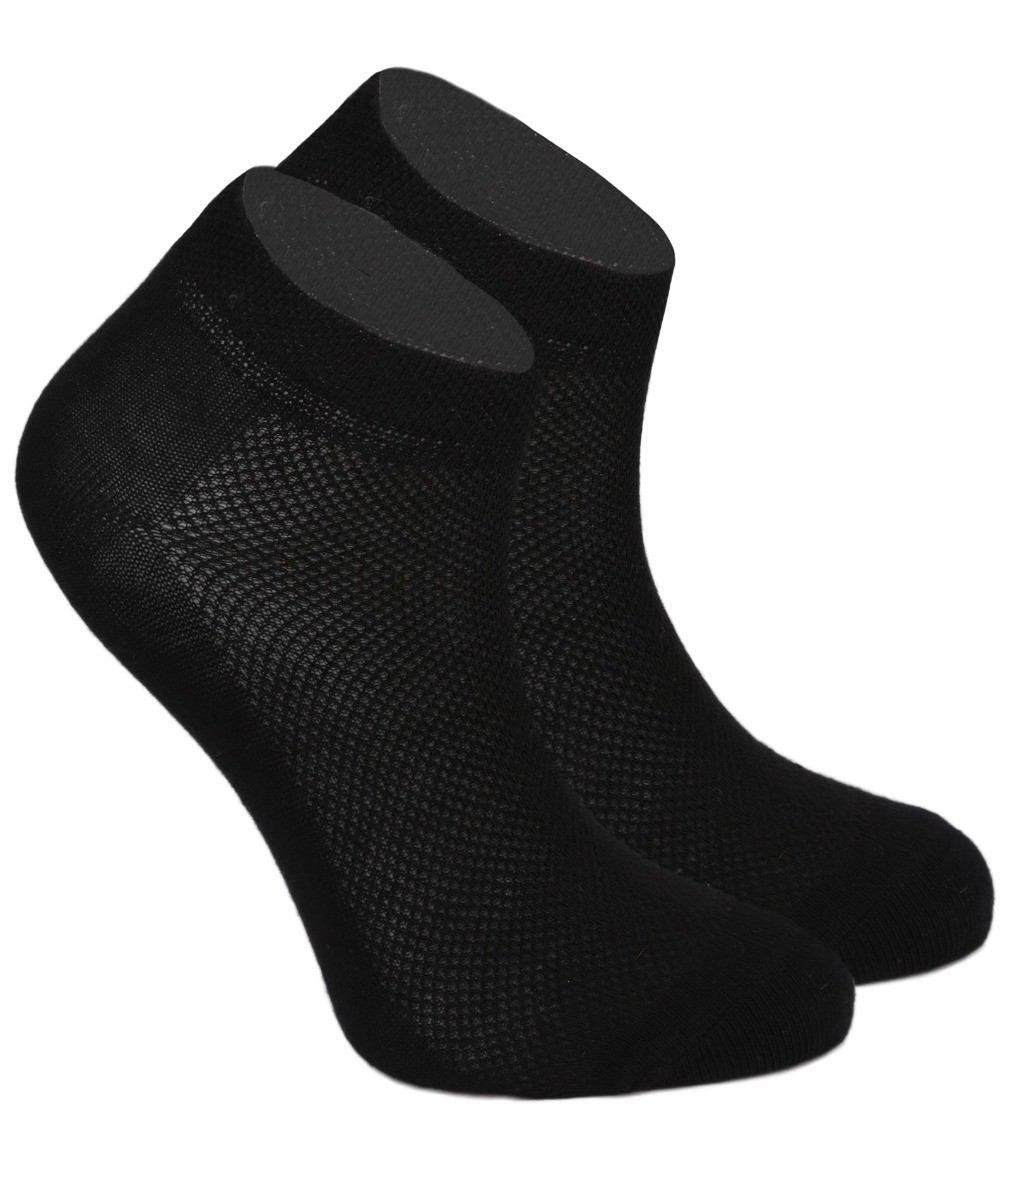 Chaussettes de cheville en coton extensible unisexe, pour garçons & filles - Noir